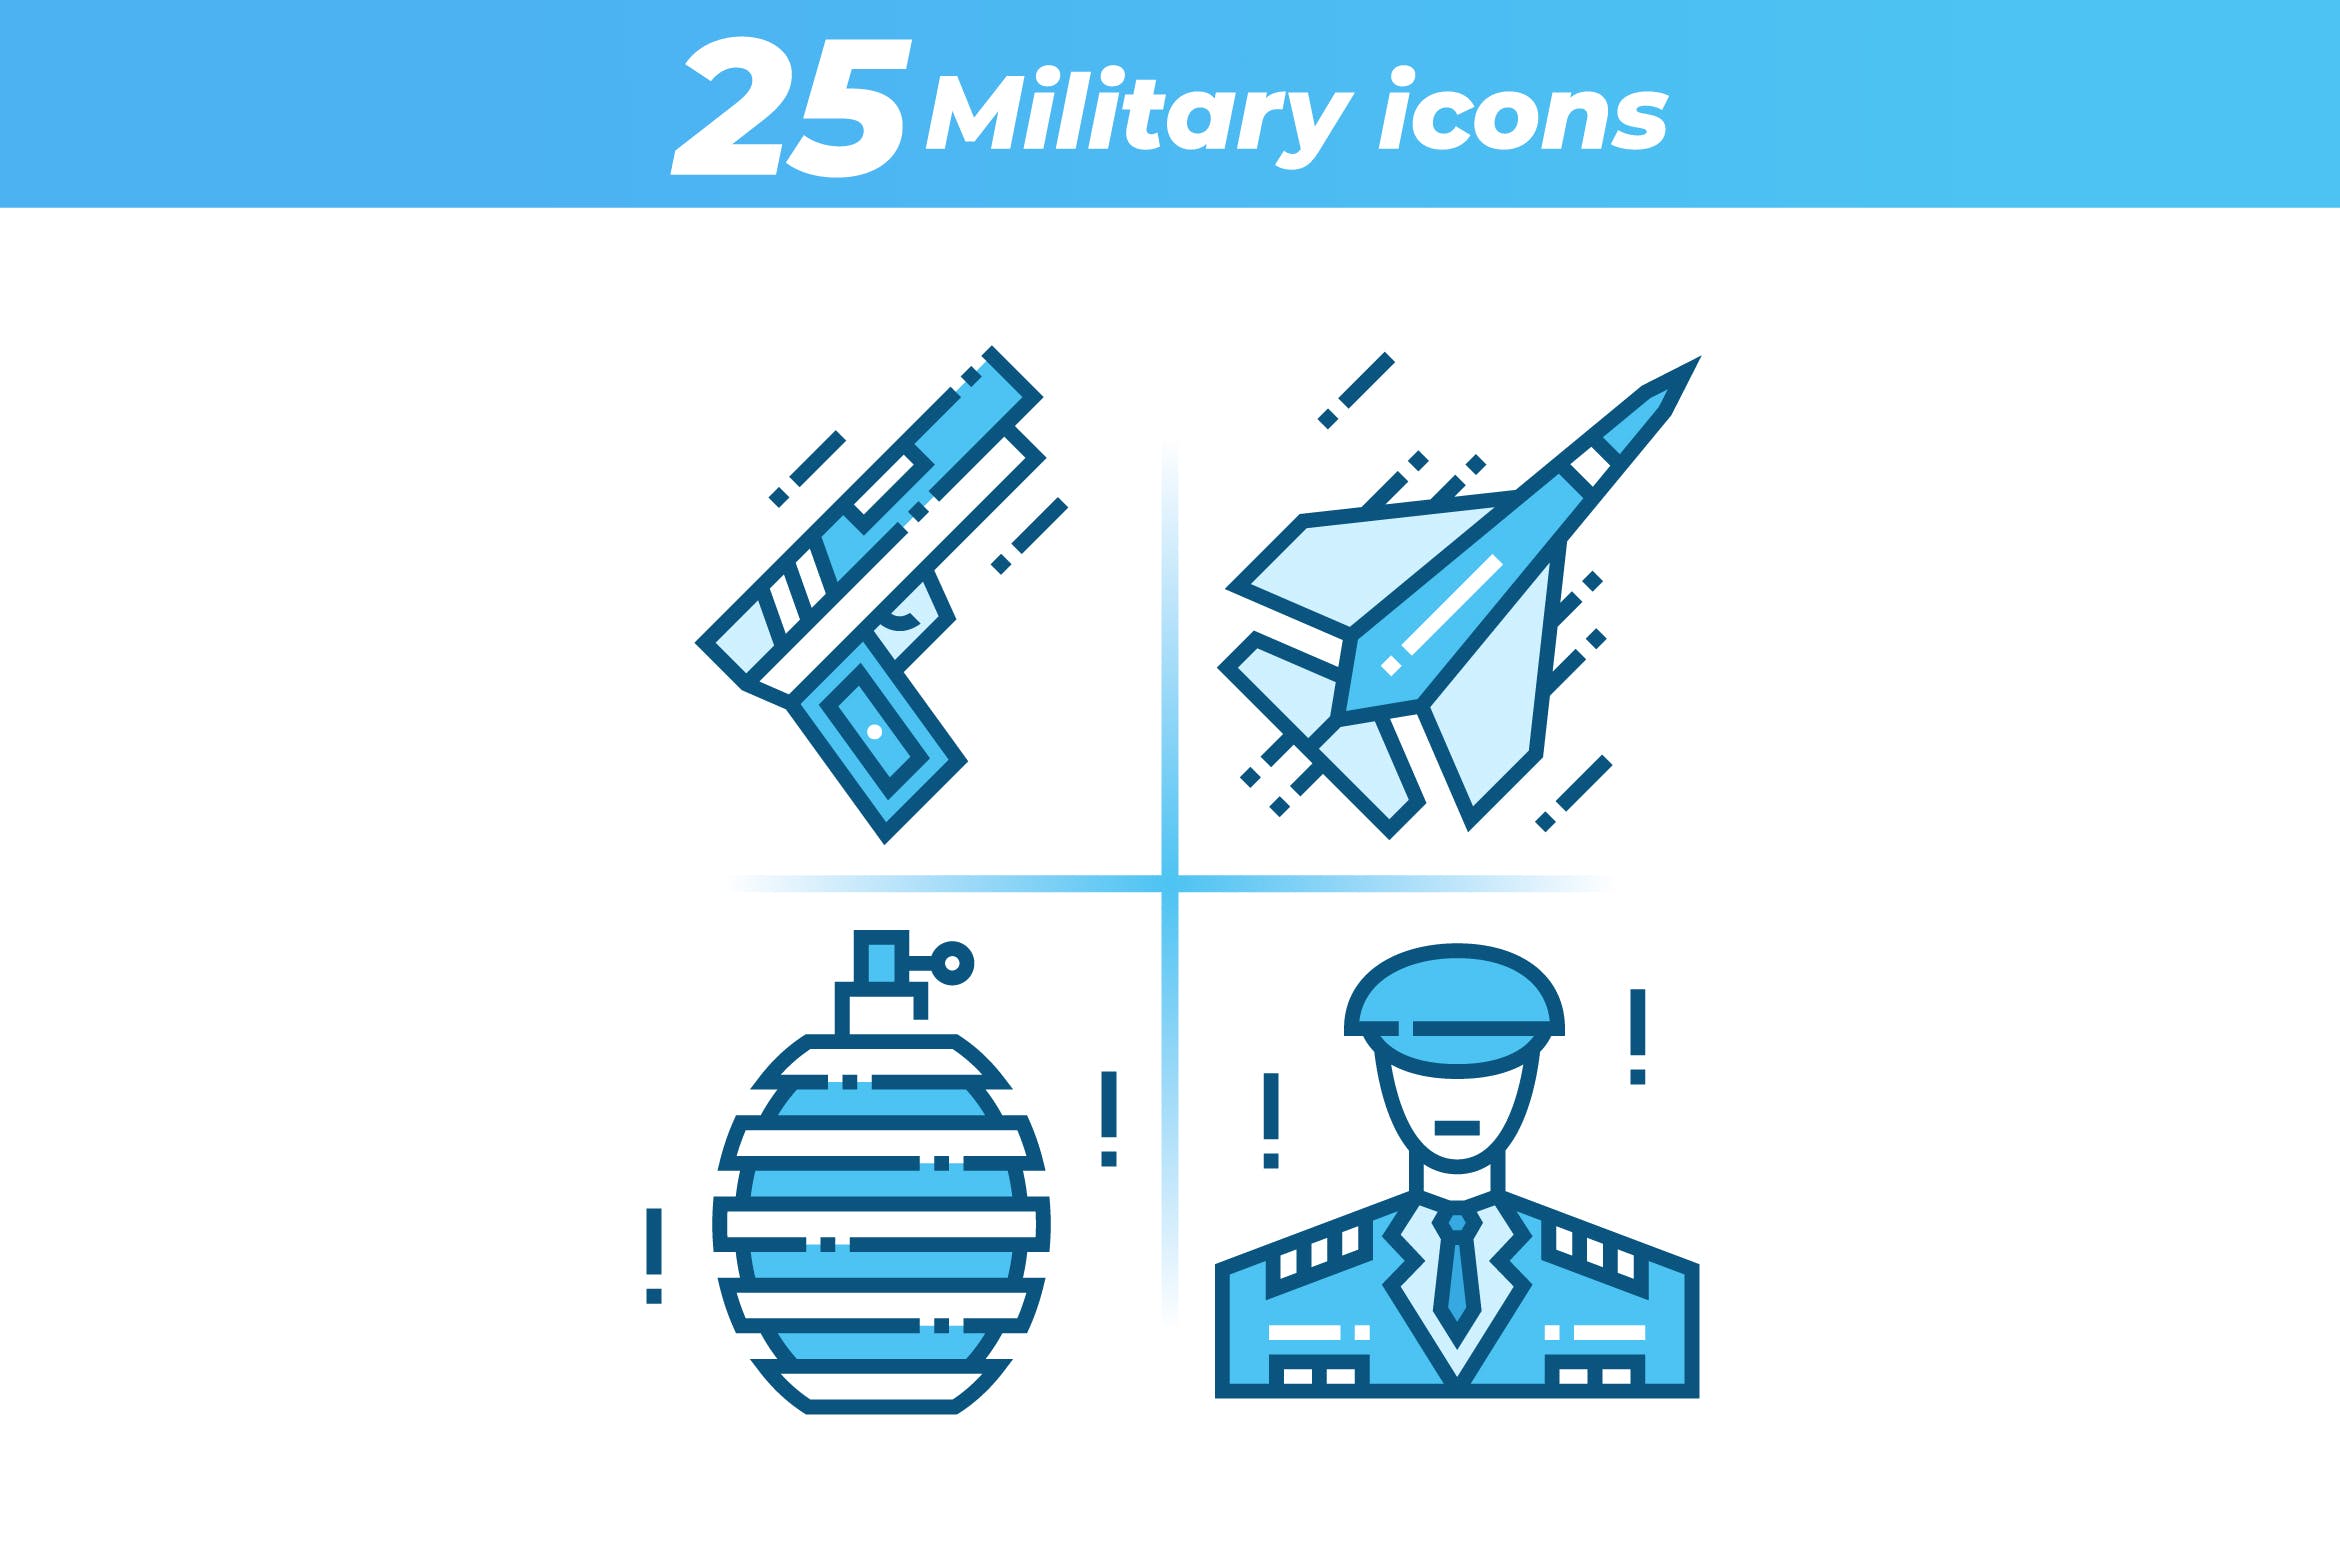 25枚军事主题矢量非凡图库精选图标 25 Military Icons插图